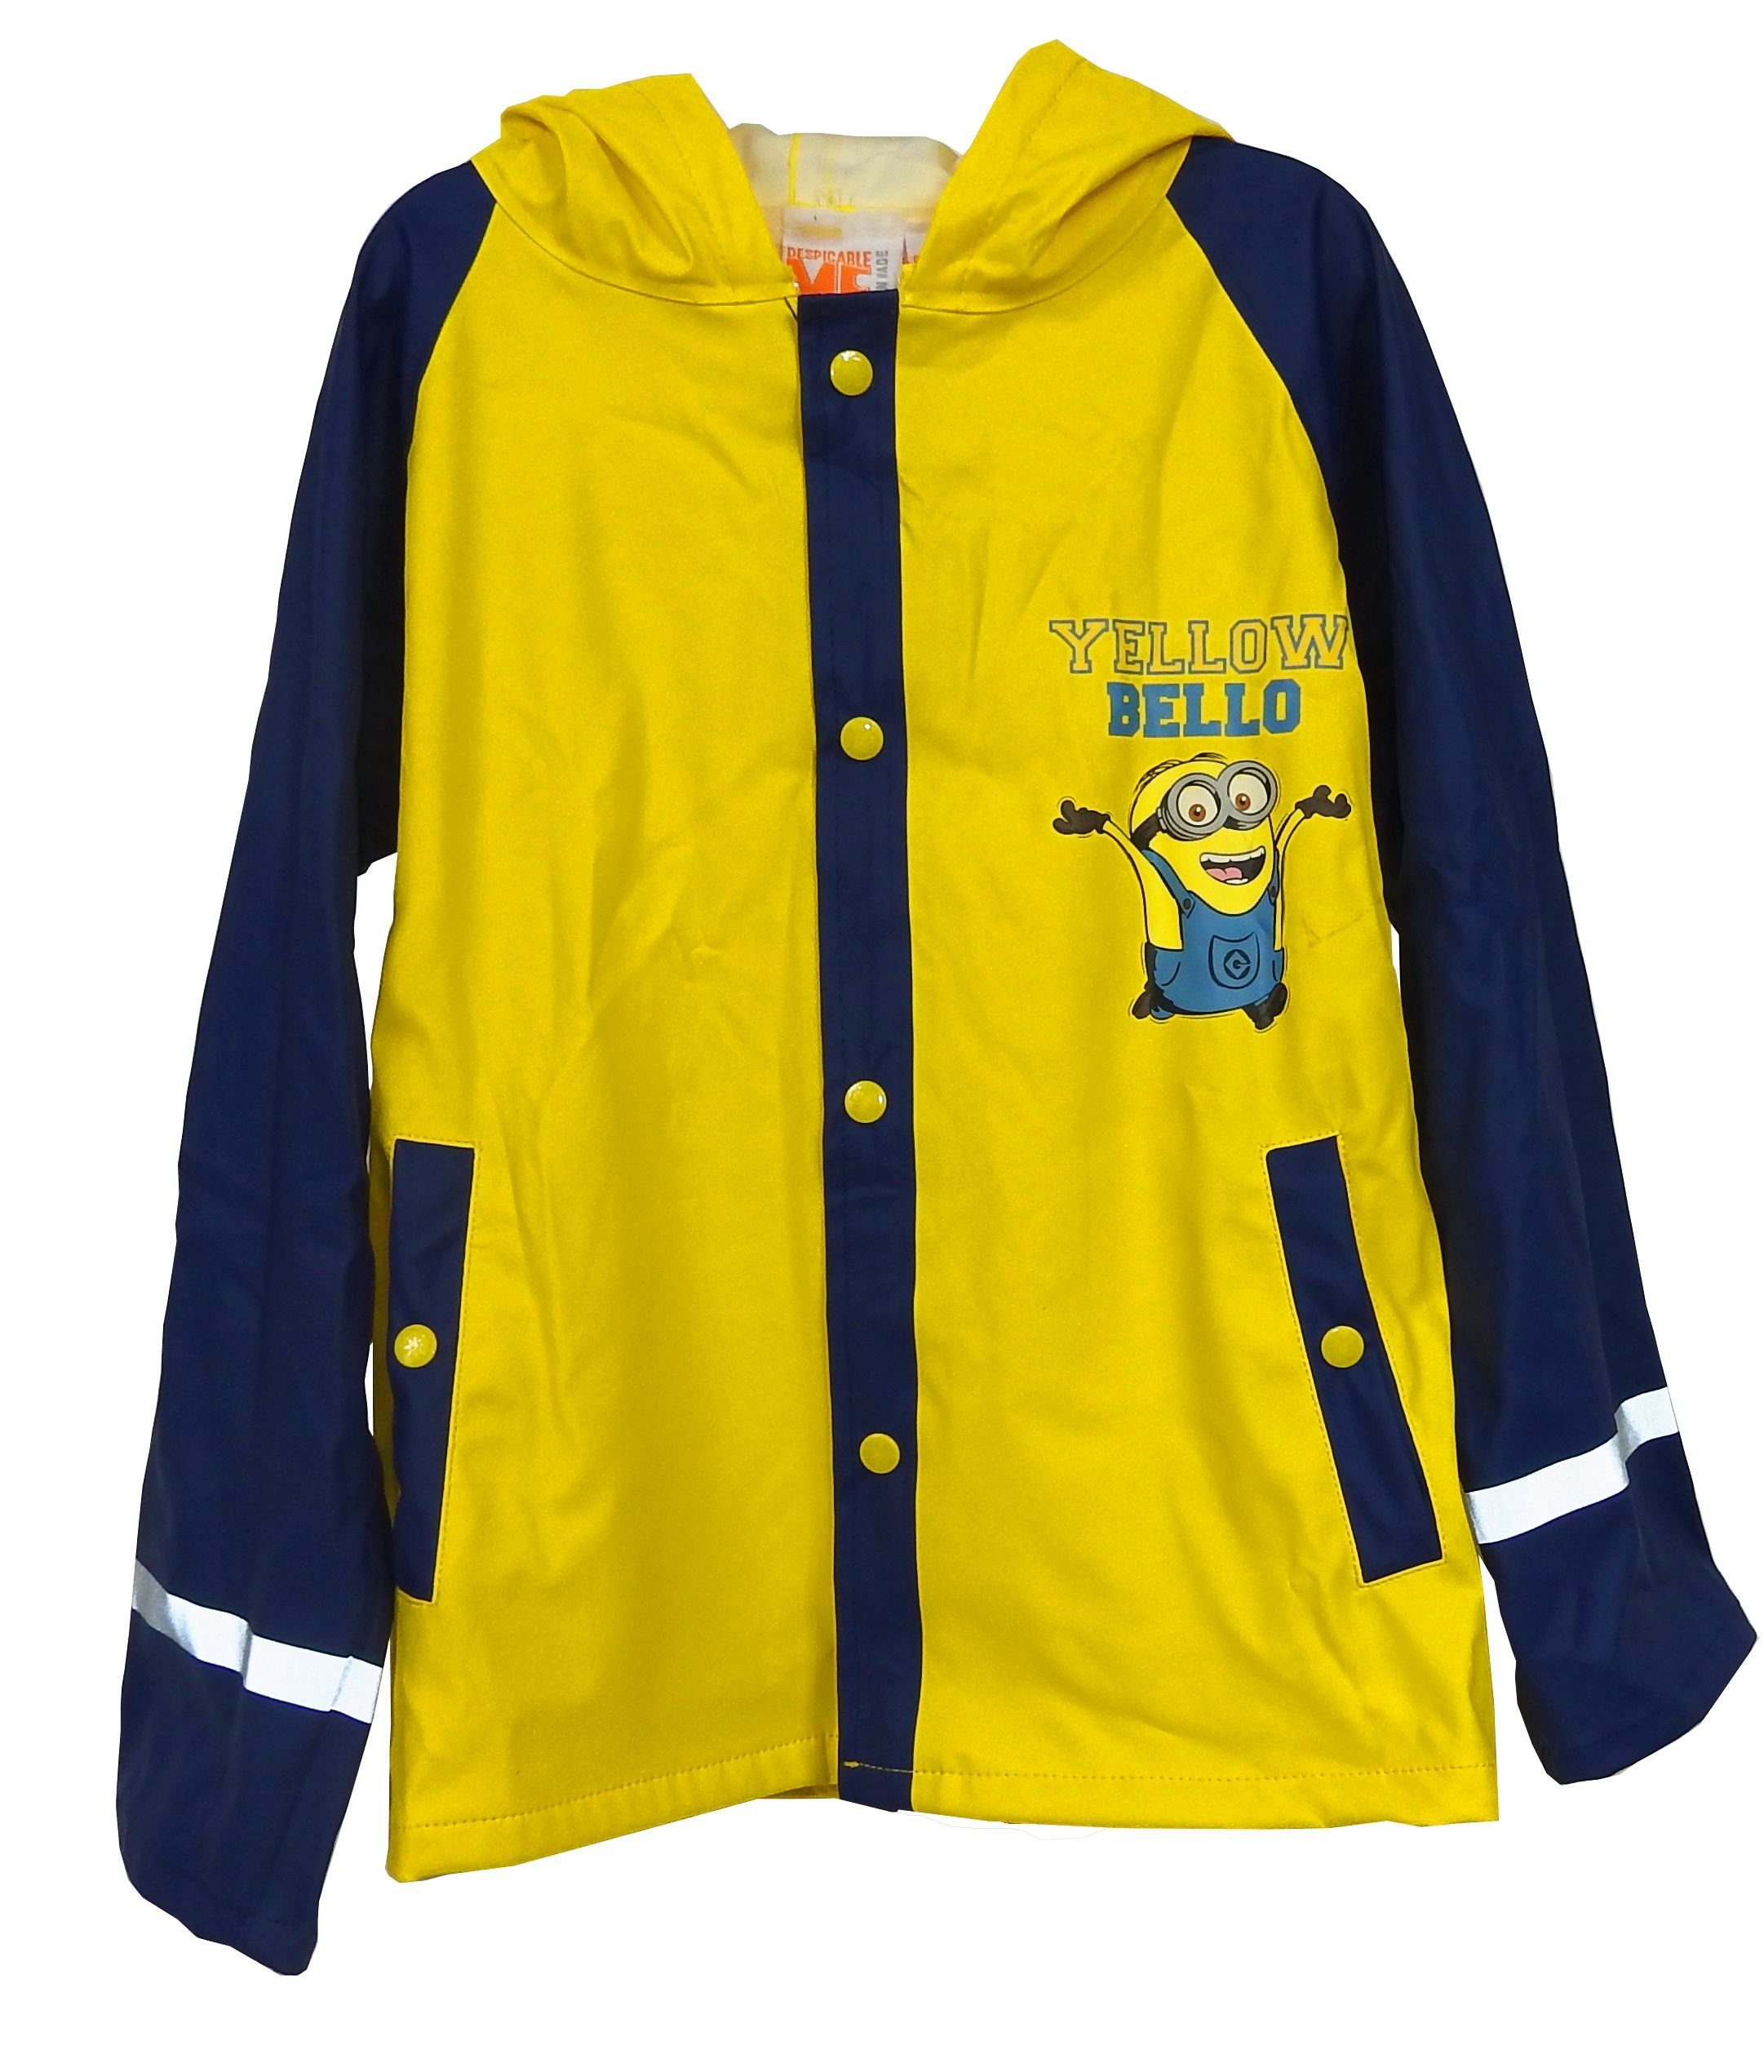 Minions Regenjacke Kinder Outdoor Buddel Matsch Jacke Jungen Funktionsjacke  gelb blau